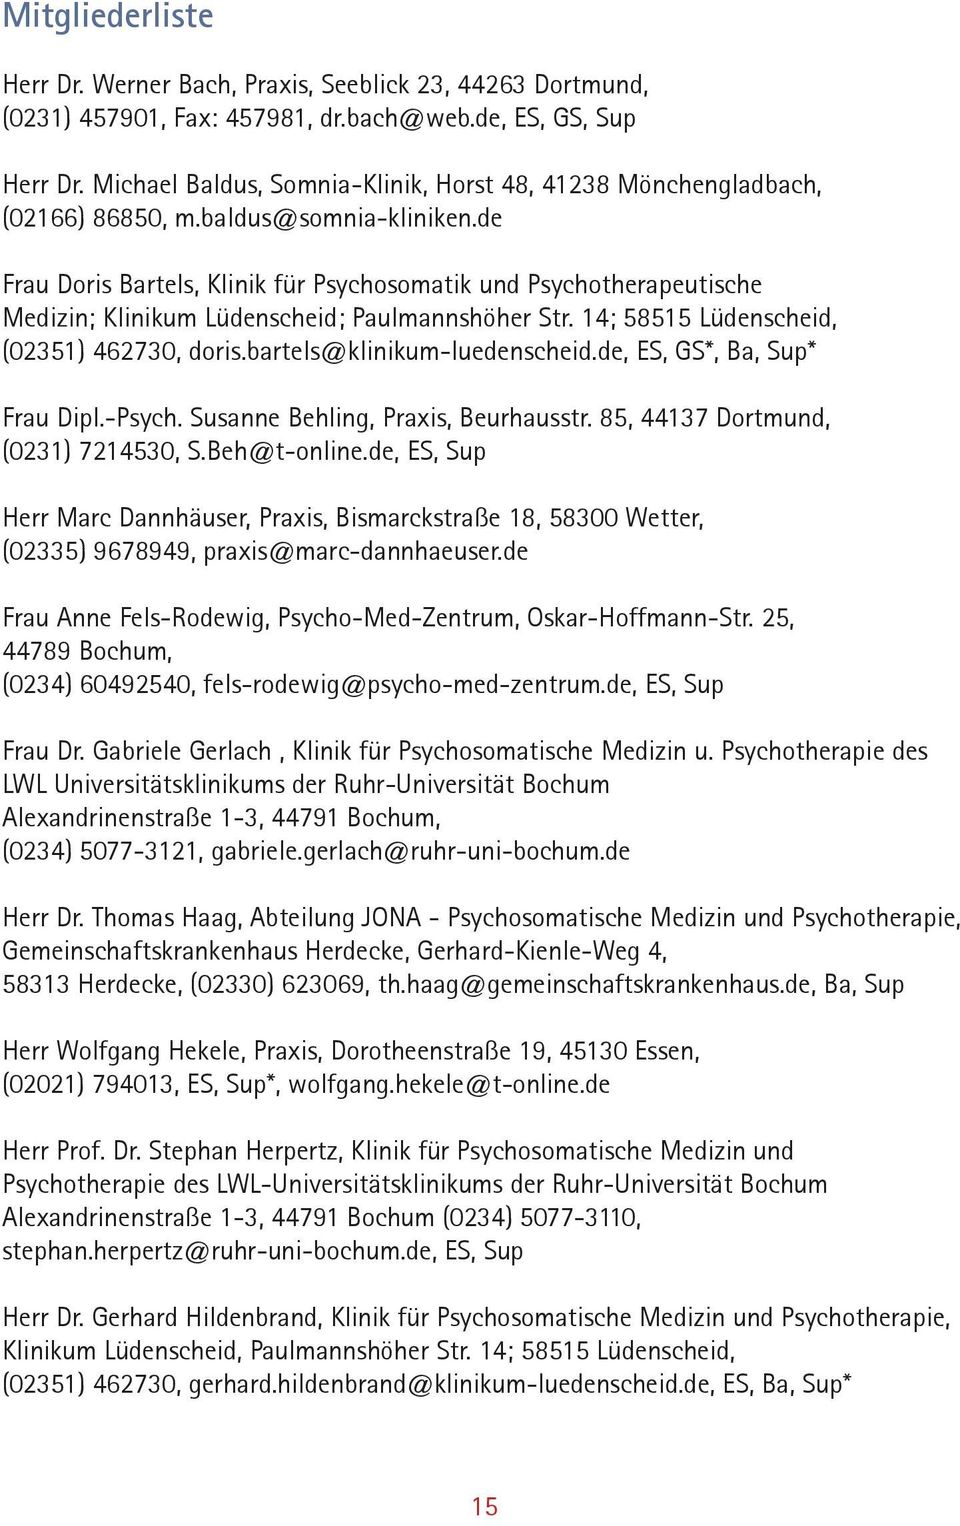 de Frau Doris Bartels, Klinik für Psychosomatik und Psychotherapeutische Medizin; Klinikum Lüdenscheid; Paulmannshöher Str. 14; 58515 Lüdenscheid, (02351) 462730, doris.bartels@klinikum-luedenscheid.